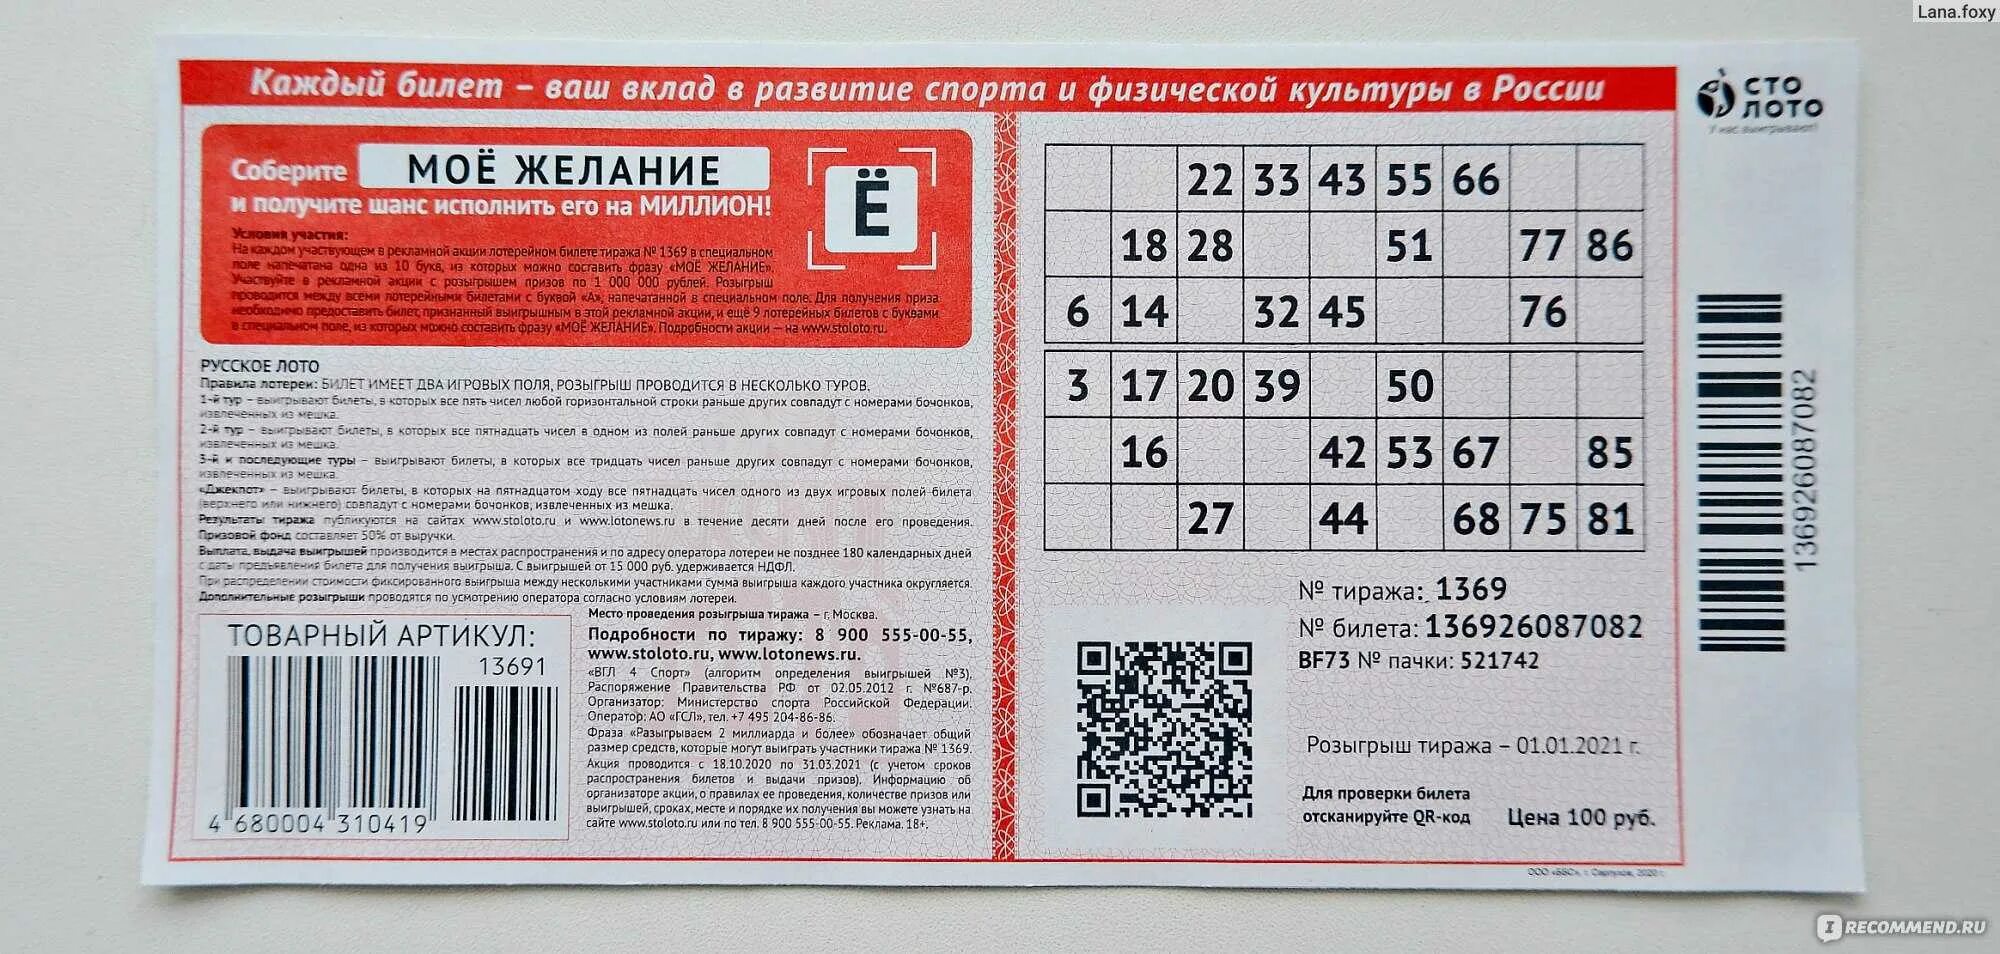 Во сколько начинает русской лото. Русское лото 1 тираж. Номер билетв русскон лото. Номер лотерейного билета. Номер билета русское лото.